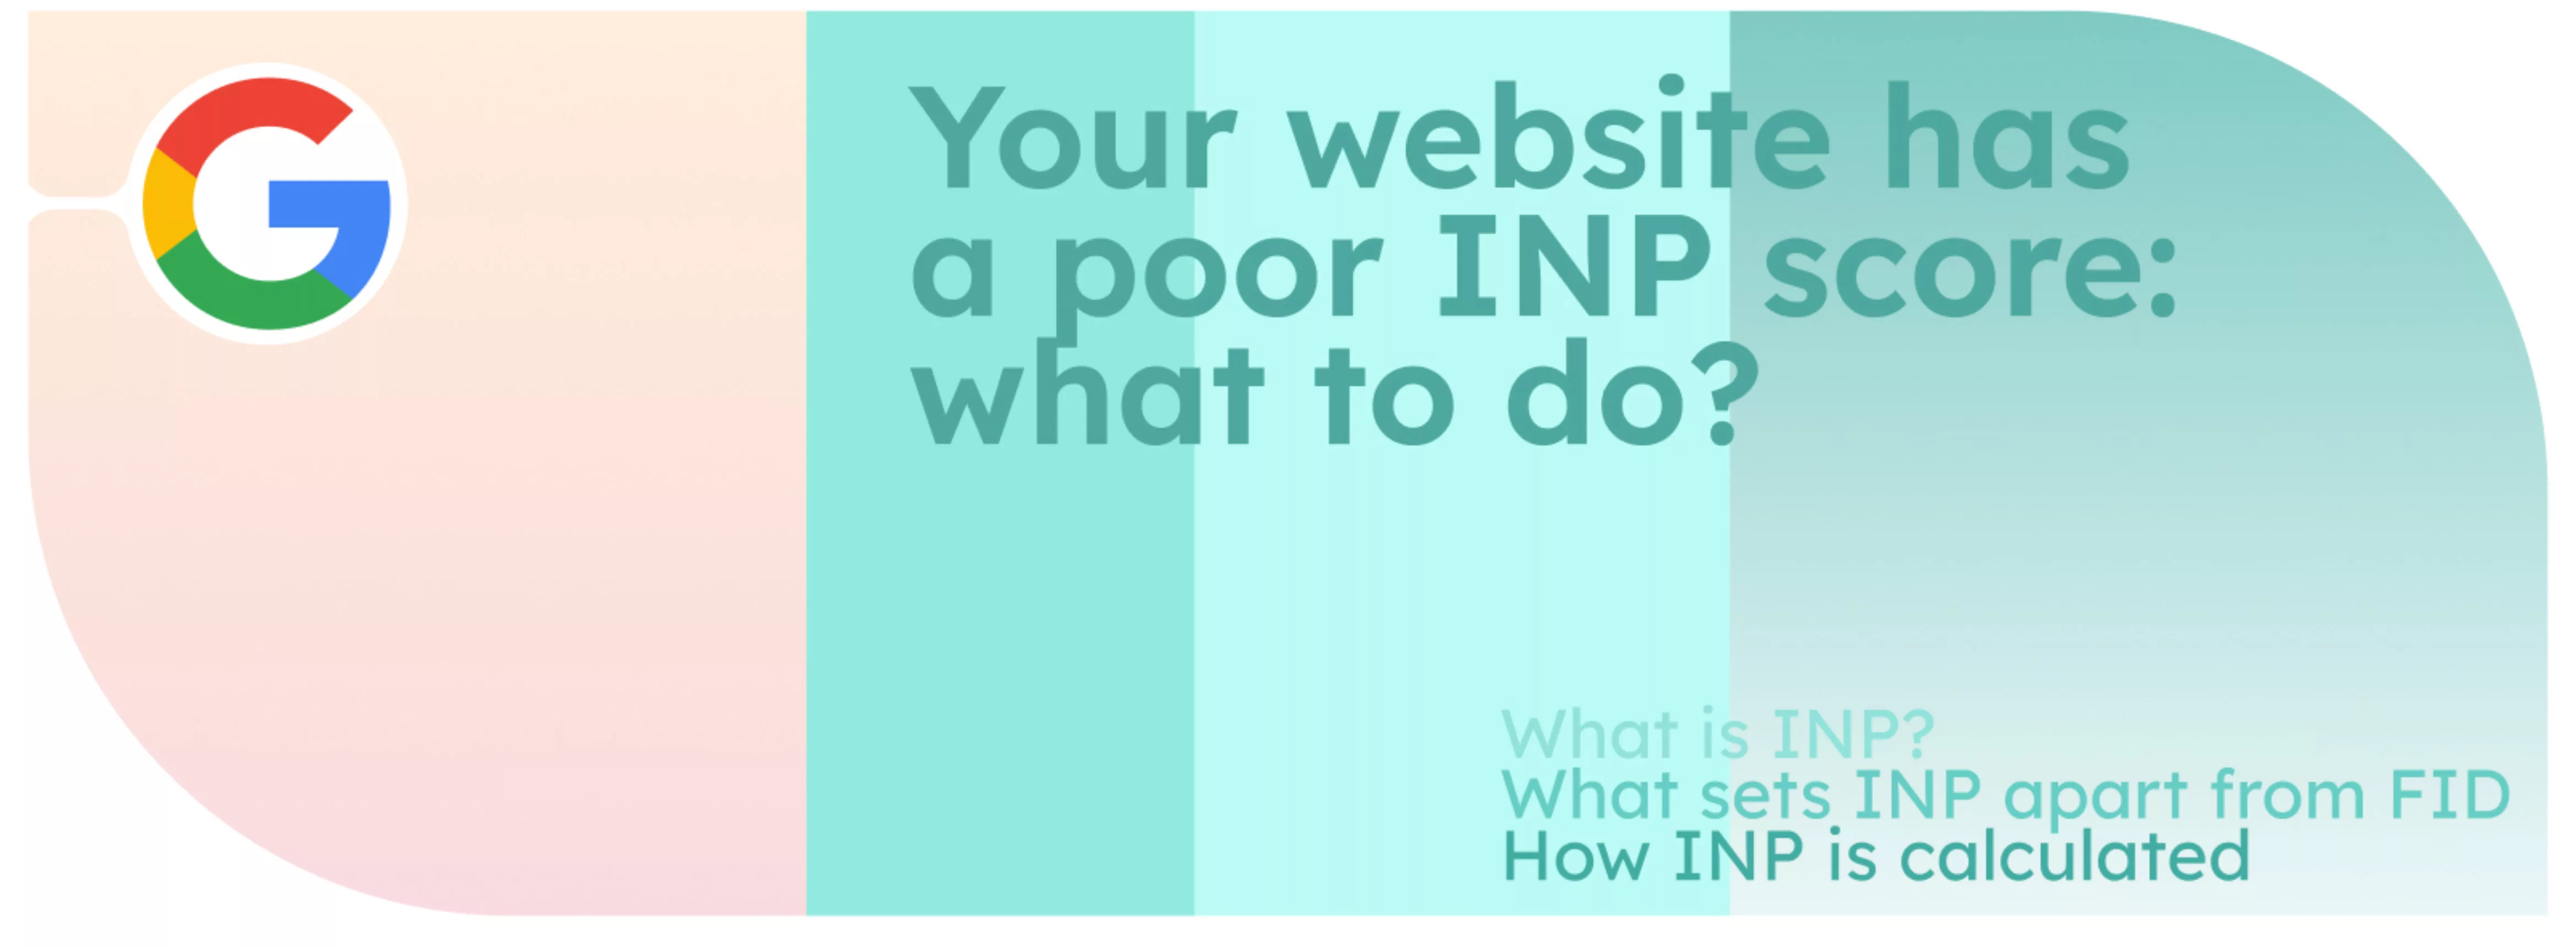 Ваш сайт получил низкую оценку INP: что делать?